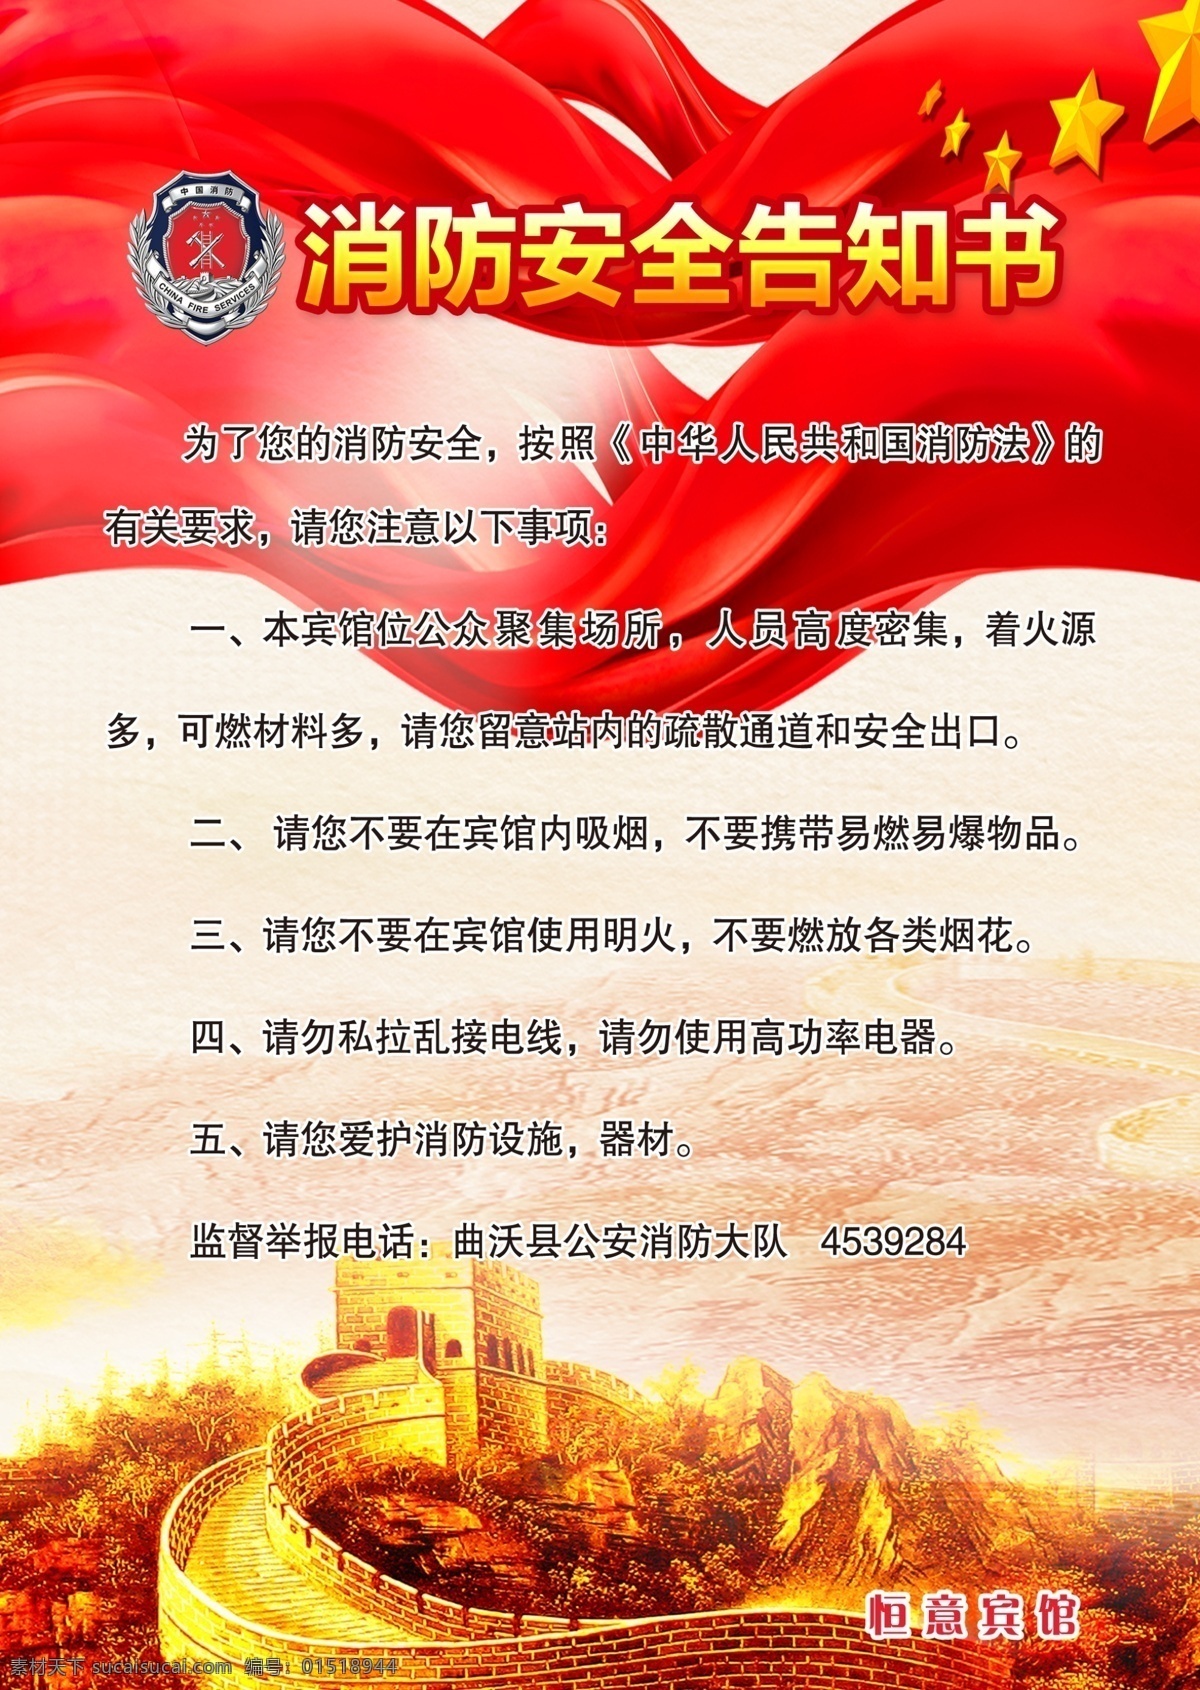 消防 安全 告知 书 告知书 中华 人民 共和国 消防法 宾馆 标志图标 公共标识标志